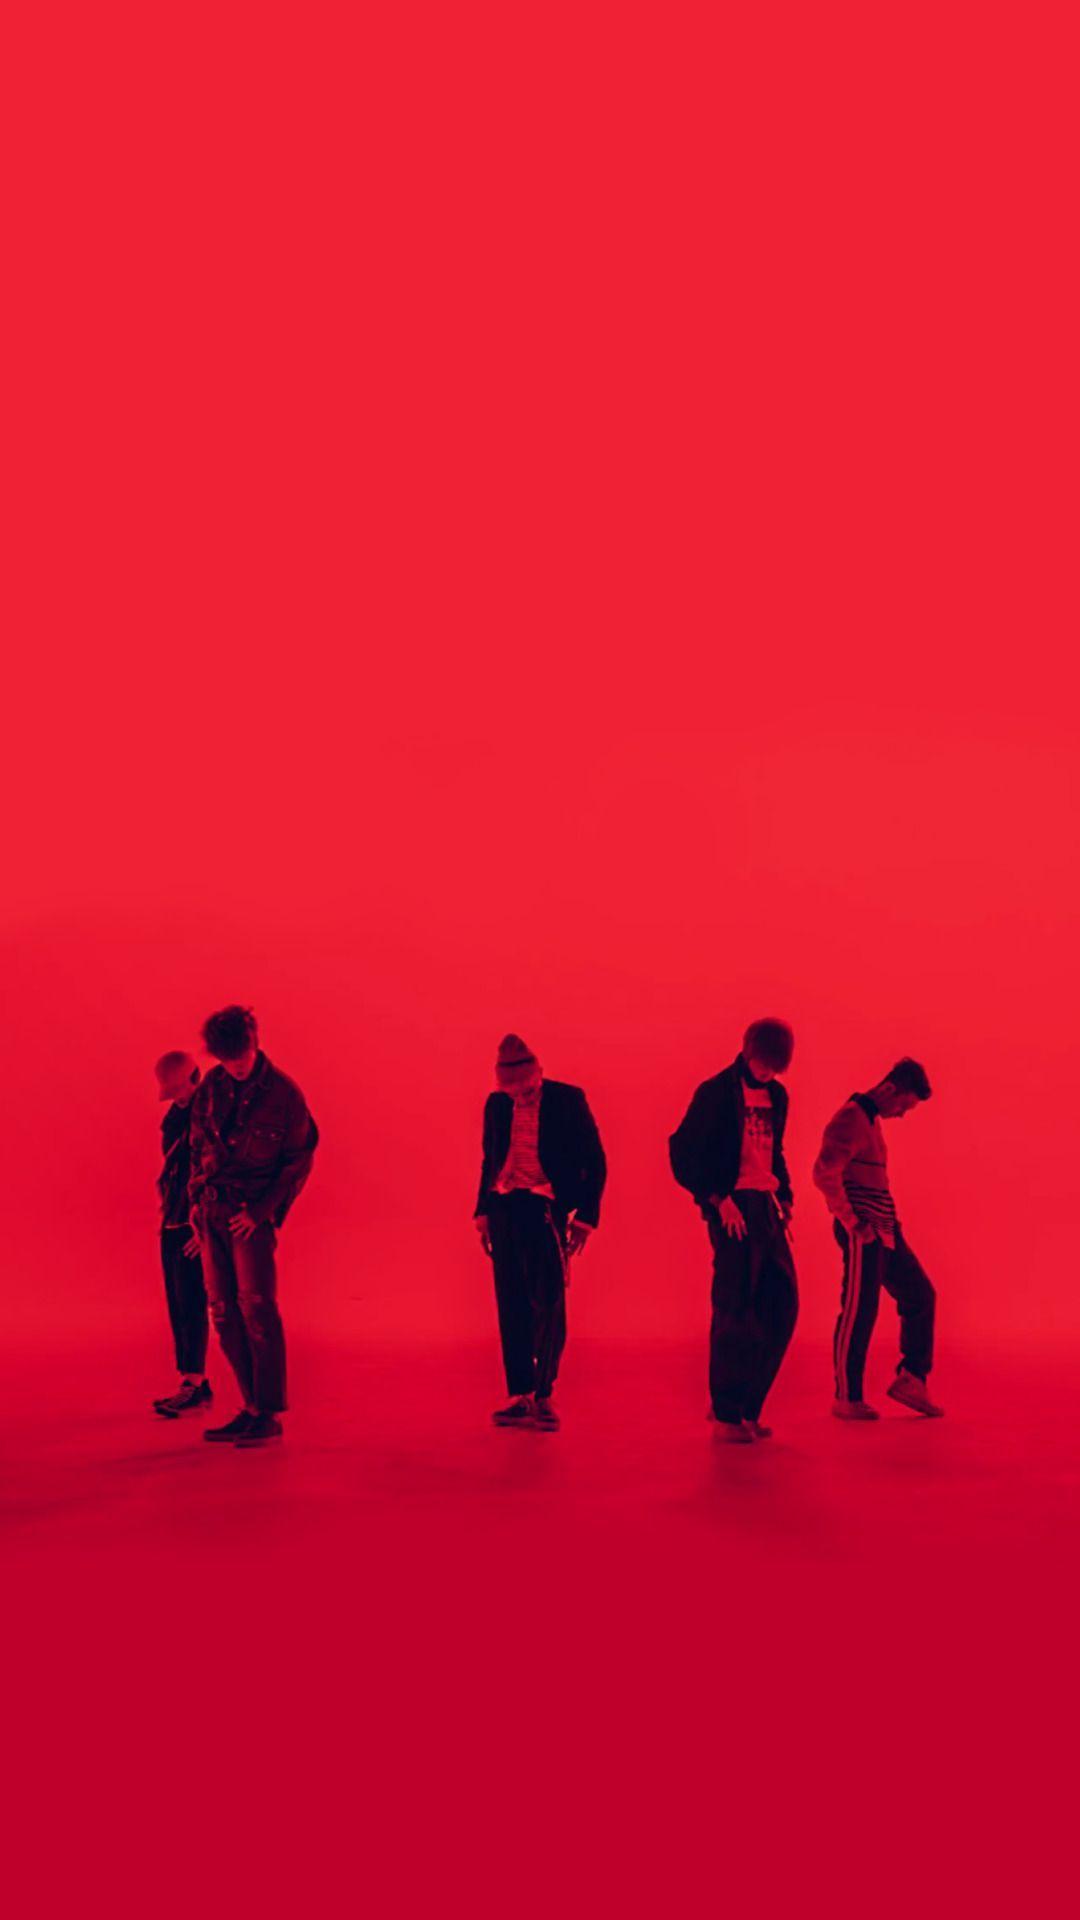 NCT U 7th Sense, Mark, Jaehyun, Taeyong, Doyoung and Mark